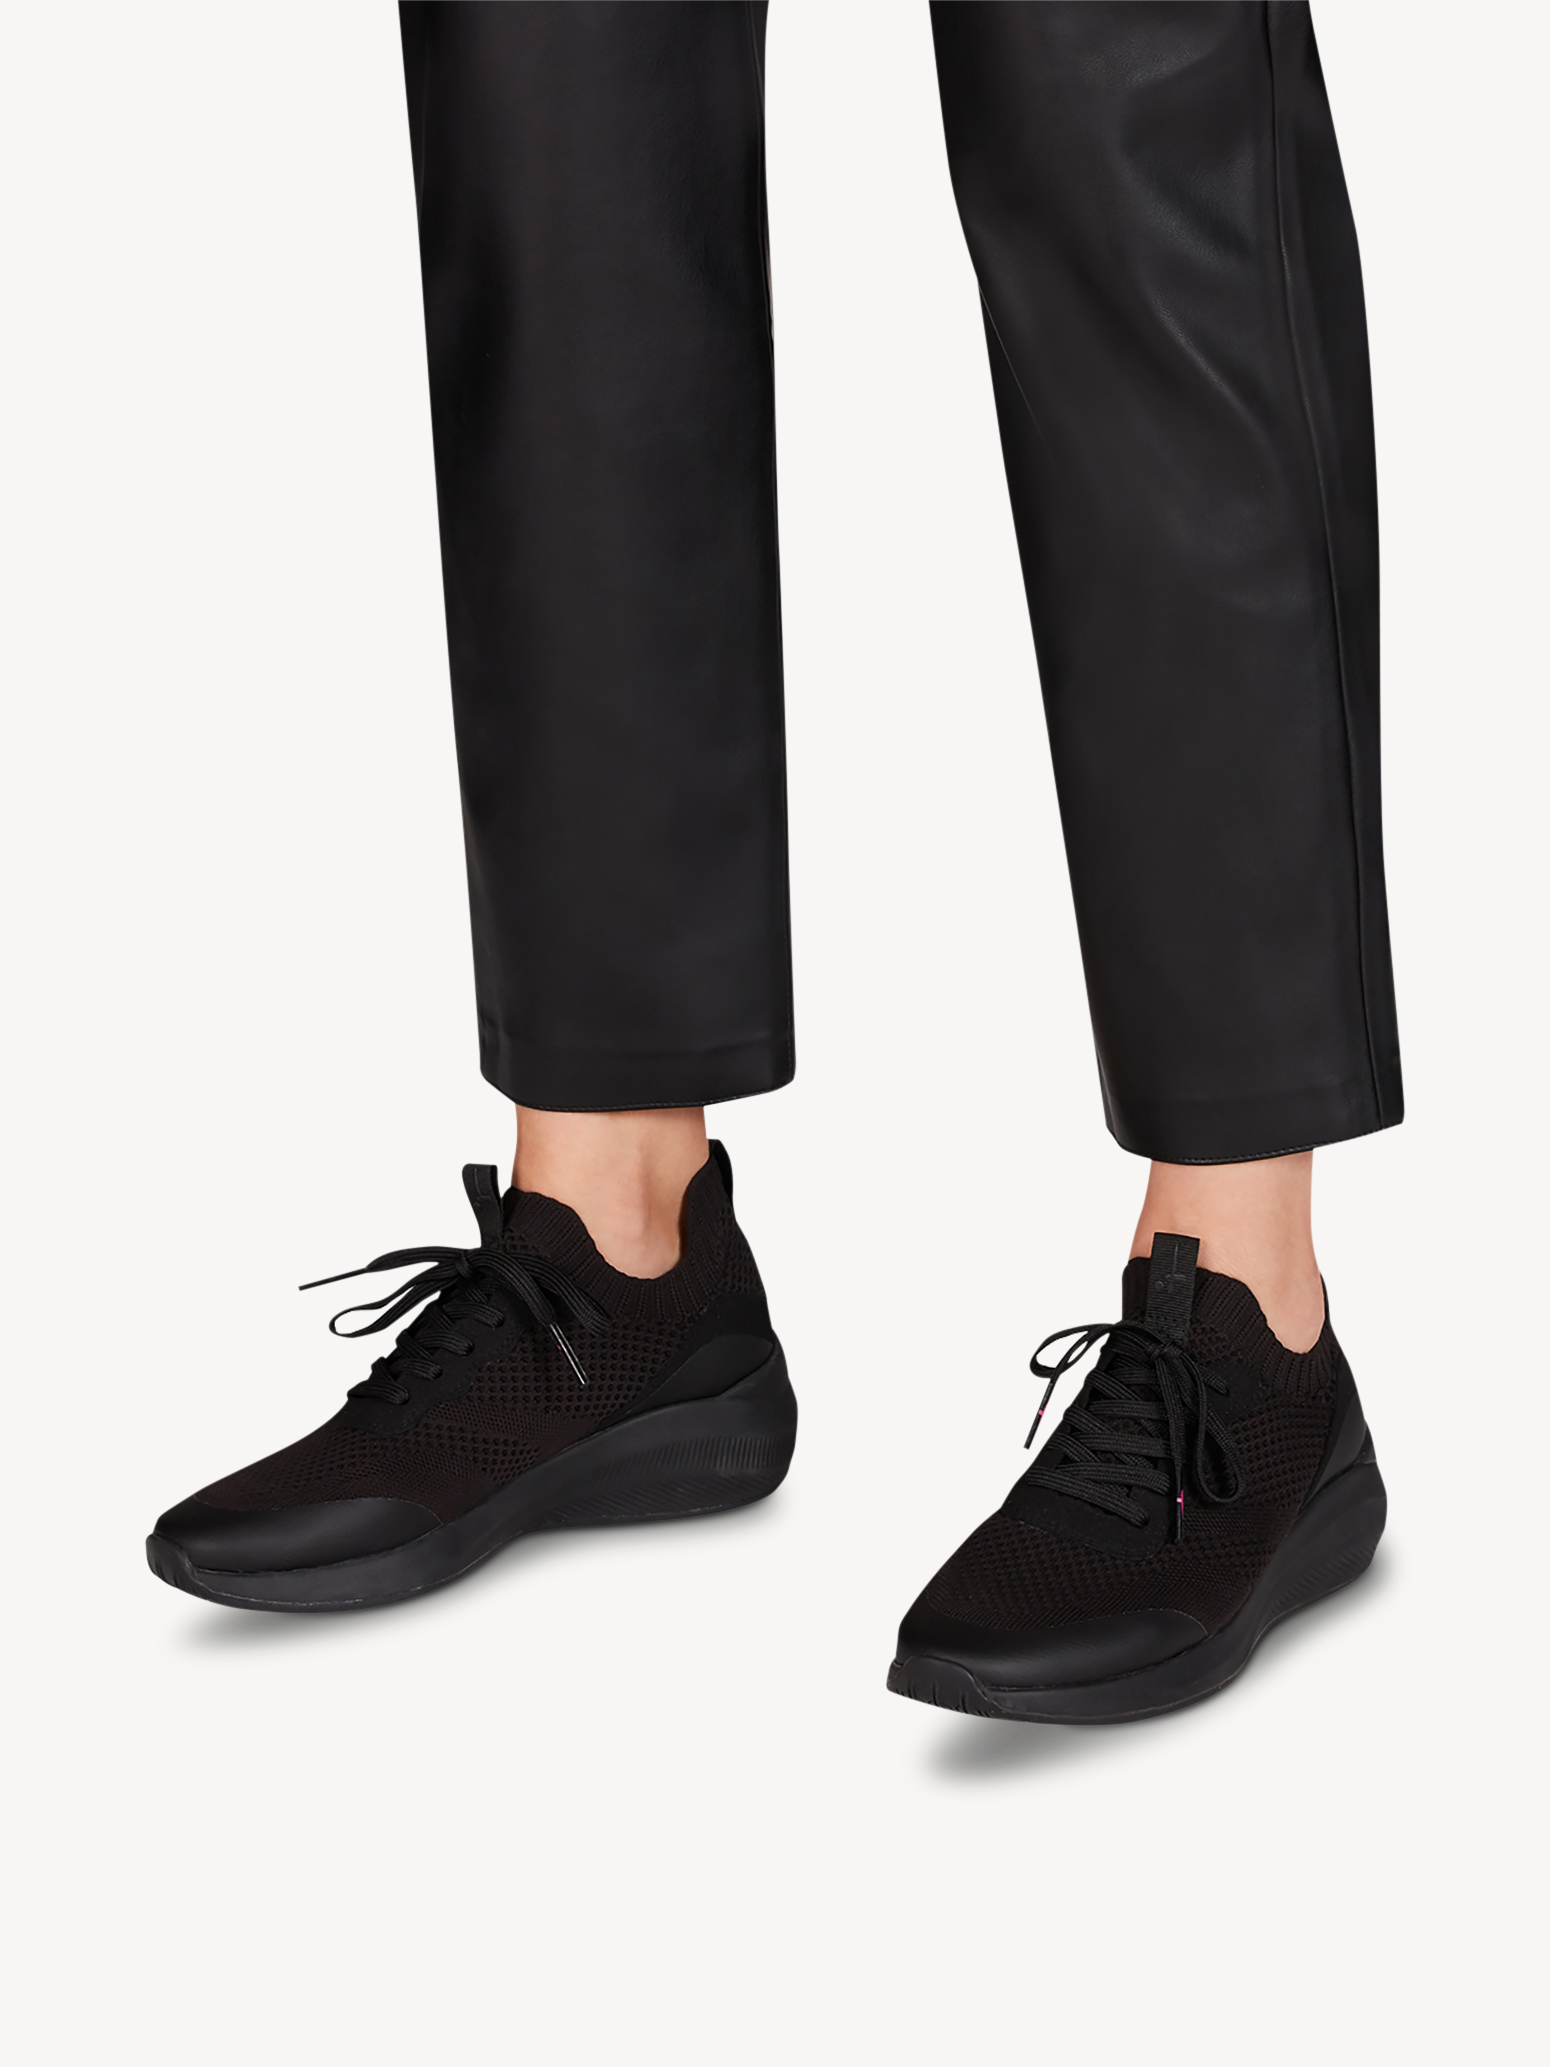 Ботинки на шнурках женские 5 AW20 (черный) - изображение №1